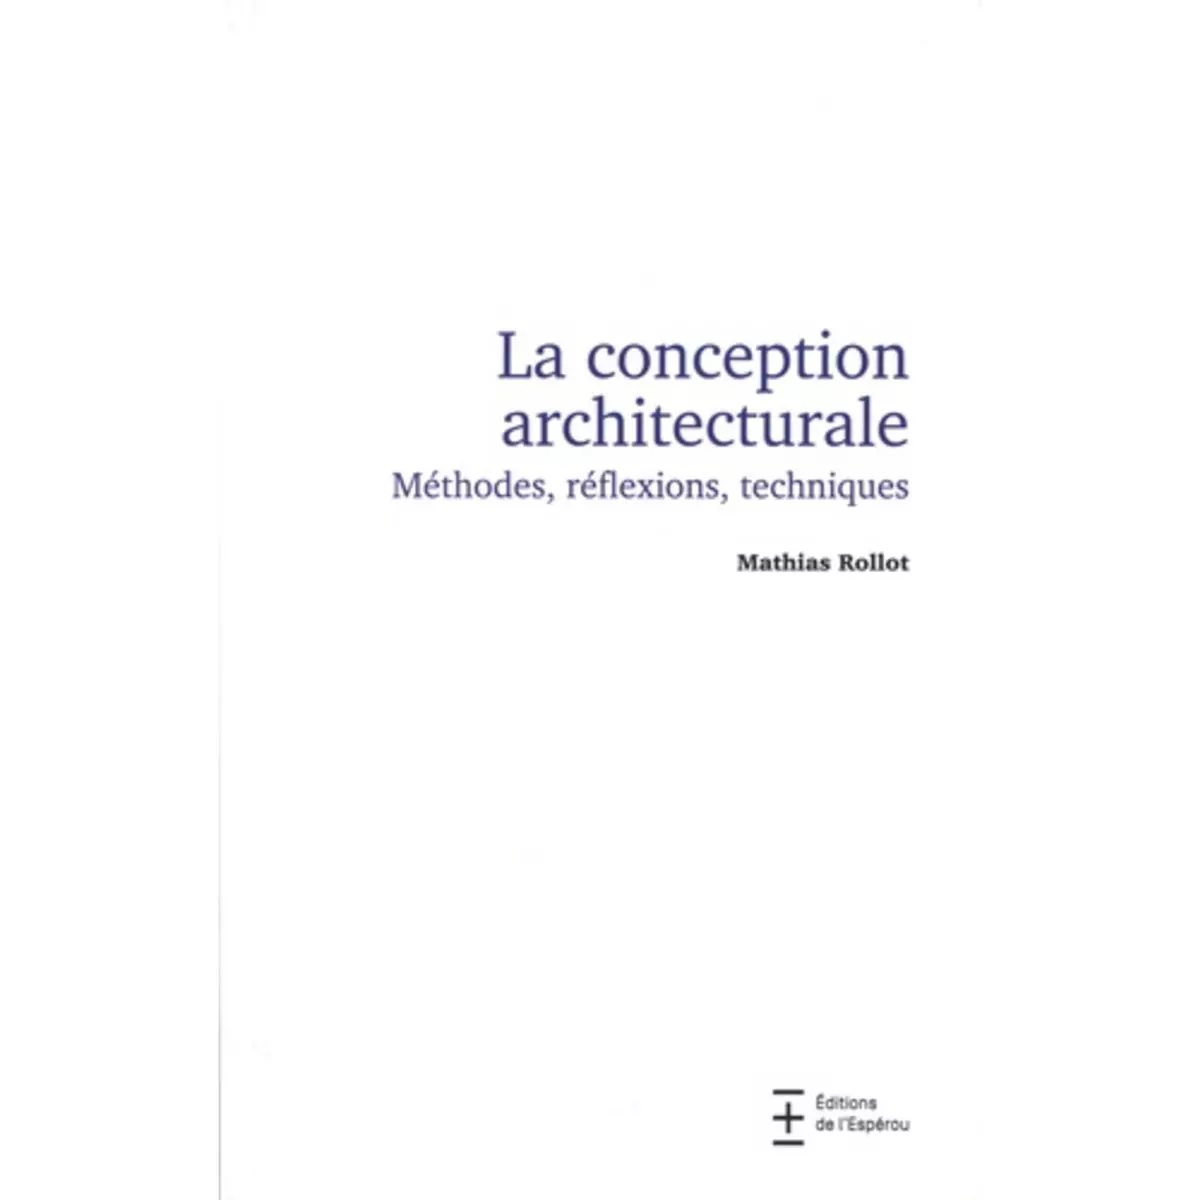  LA CONCEPTION ARCHITECTURALE. METHODE, REFLEXIONS, TECHNIQUES, Rollot Mathias